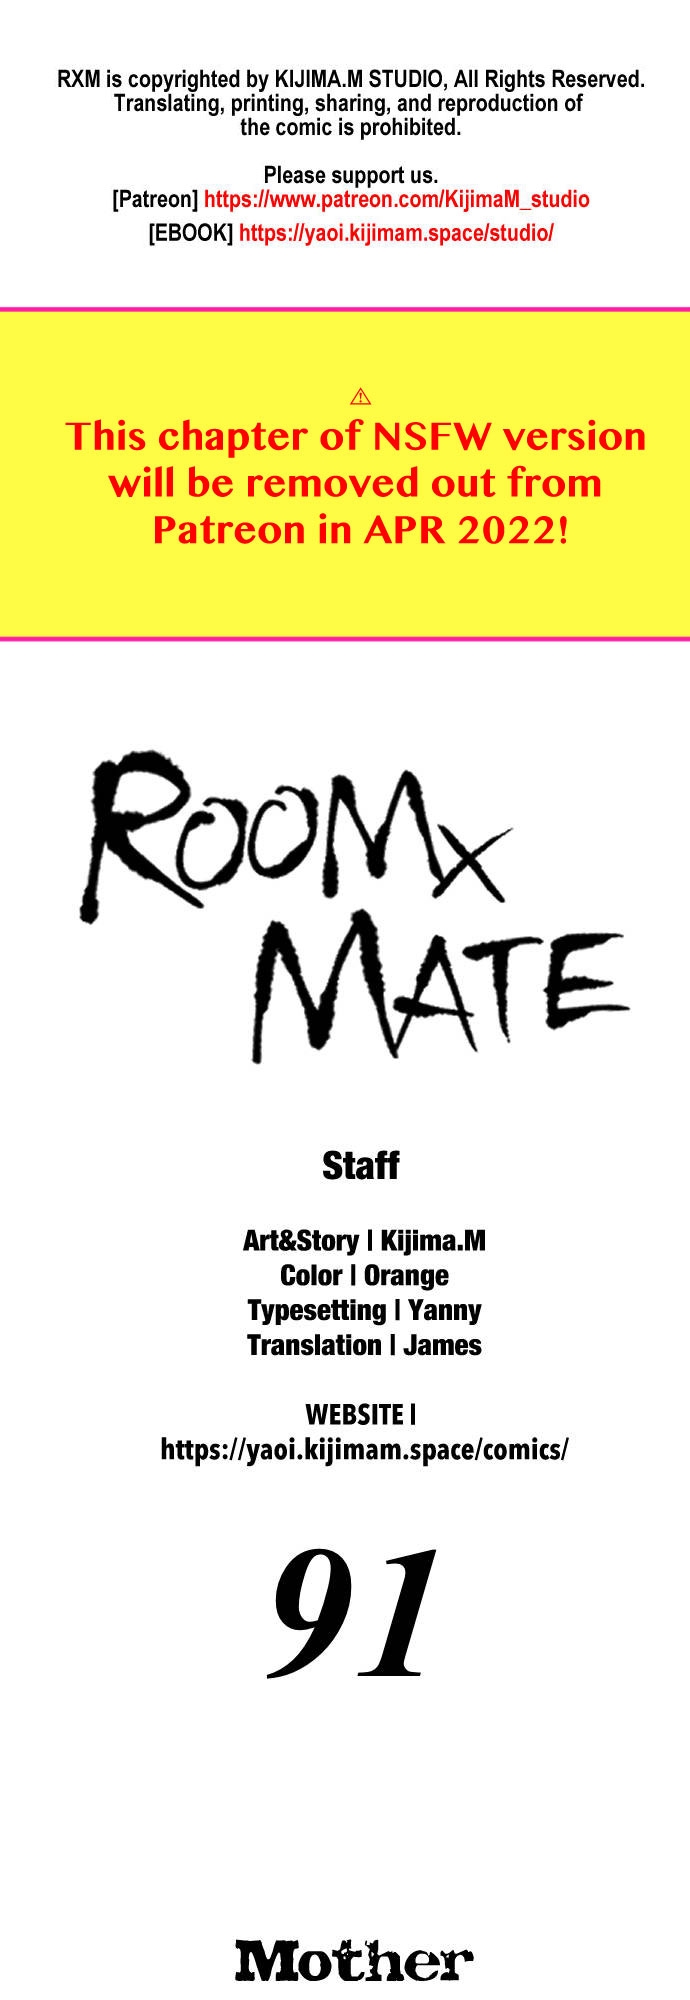 RoomXMate 91